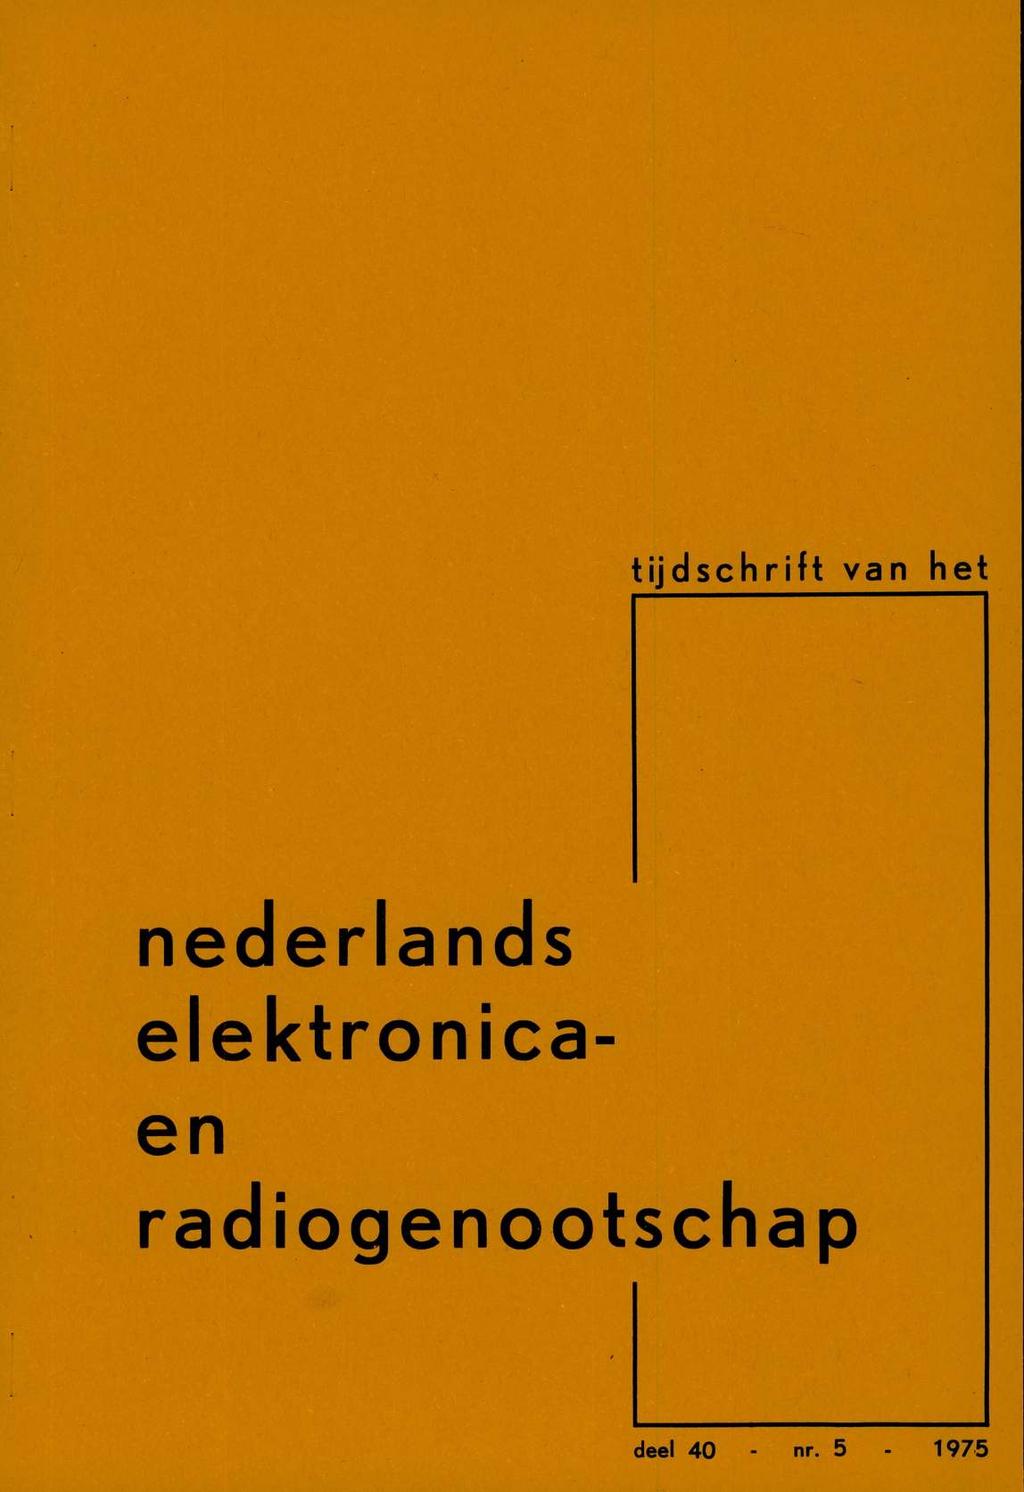 . tijdschrift van het nederlands